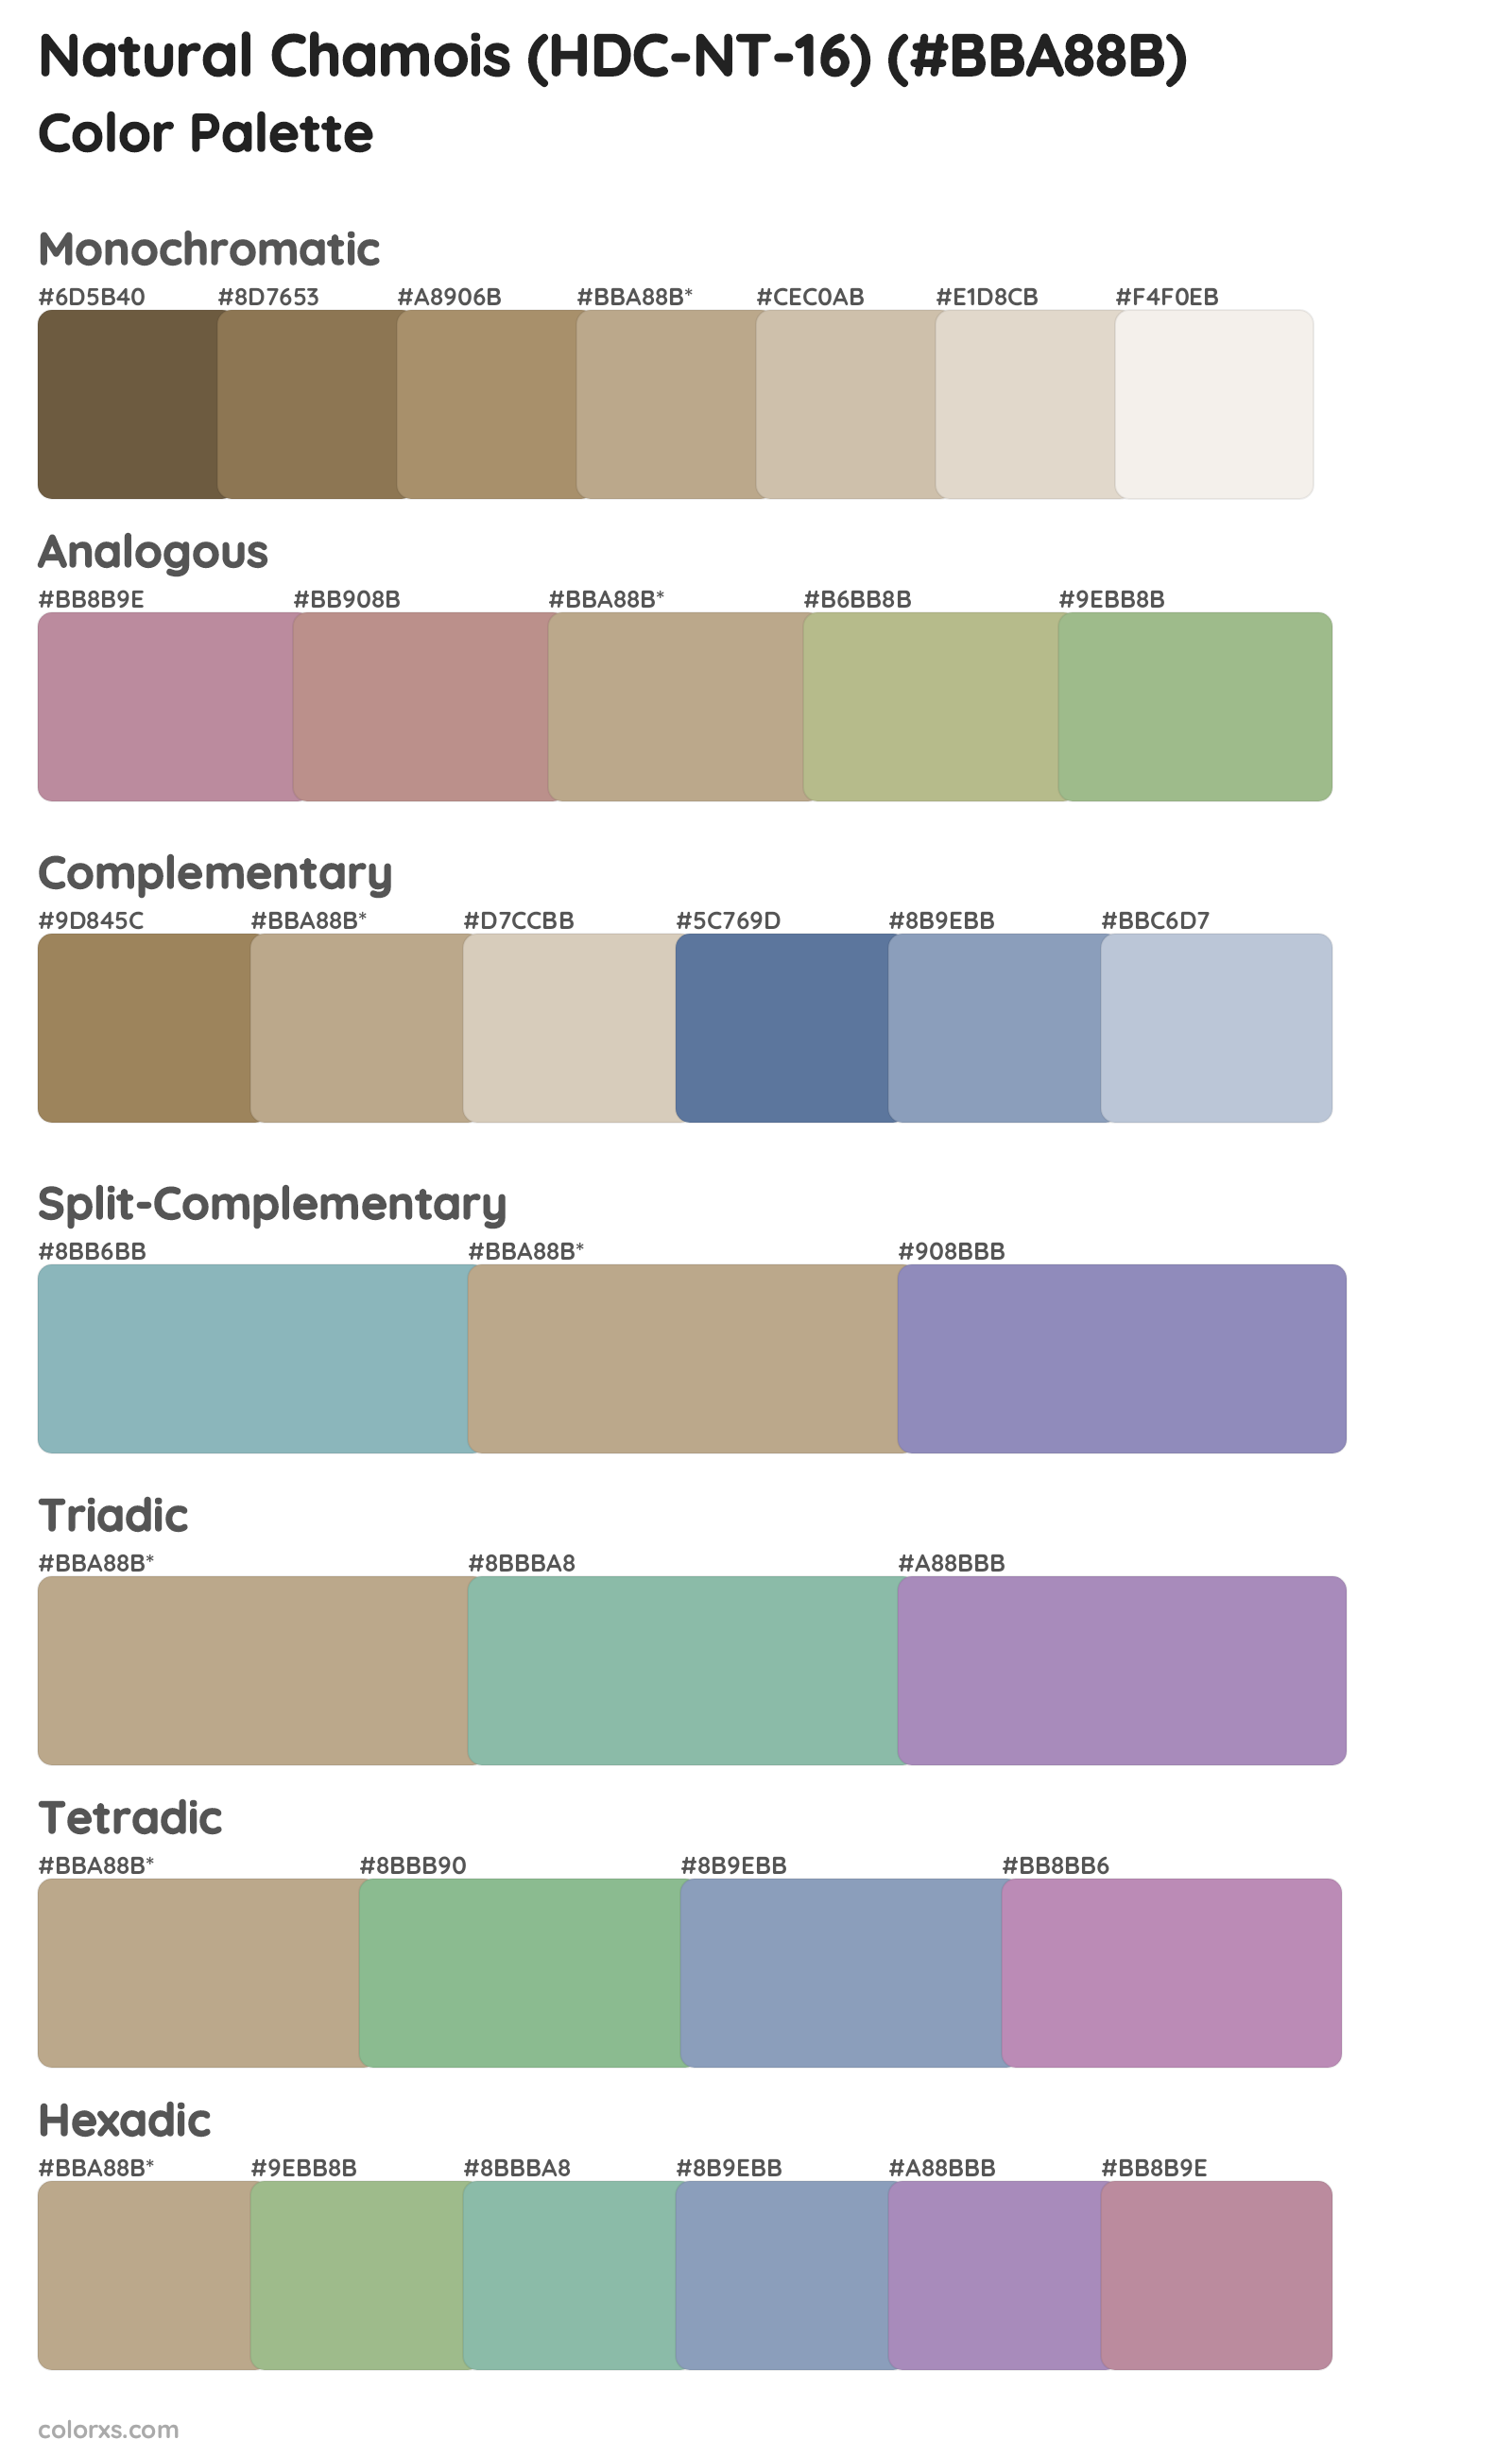 Natural Chamois (HDC-NT-16) Color Scheme Palettes